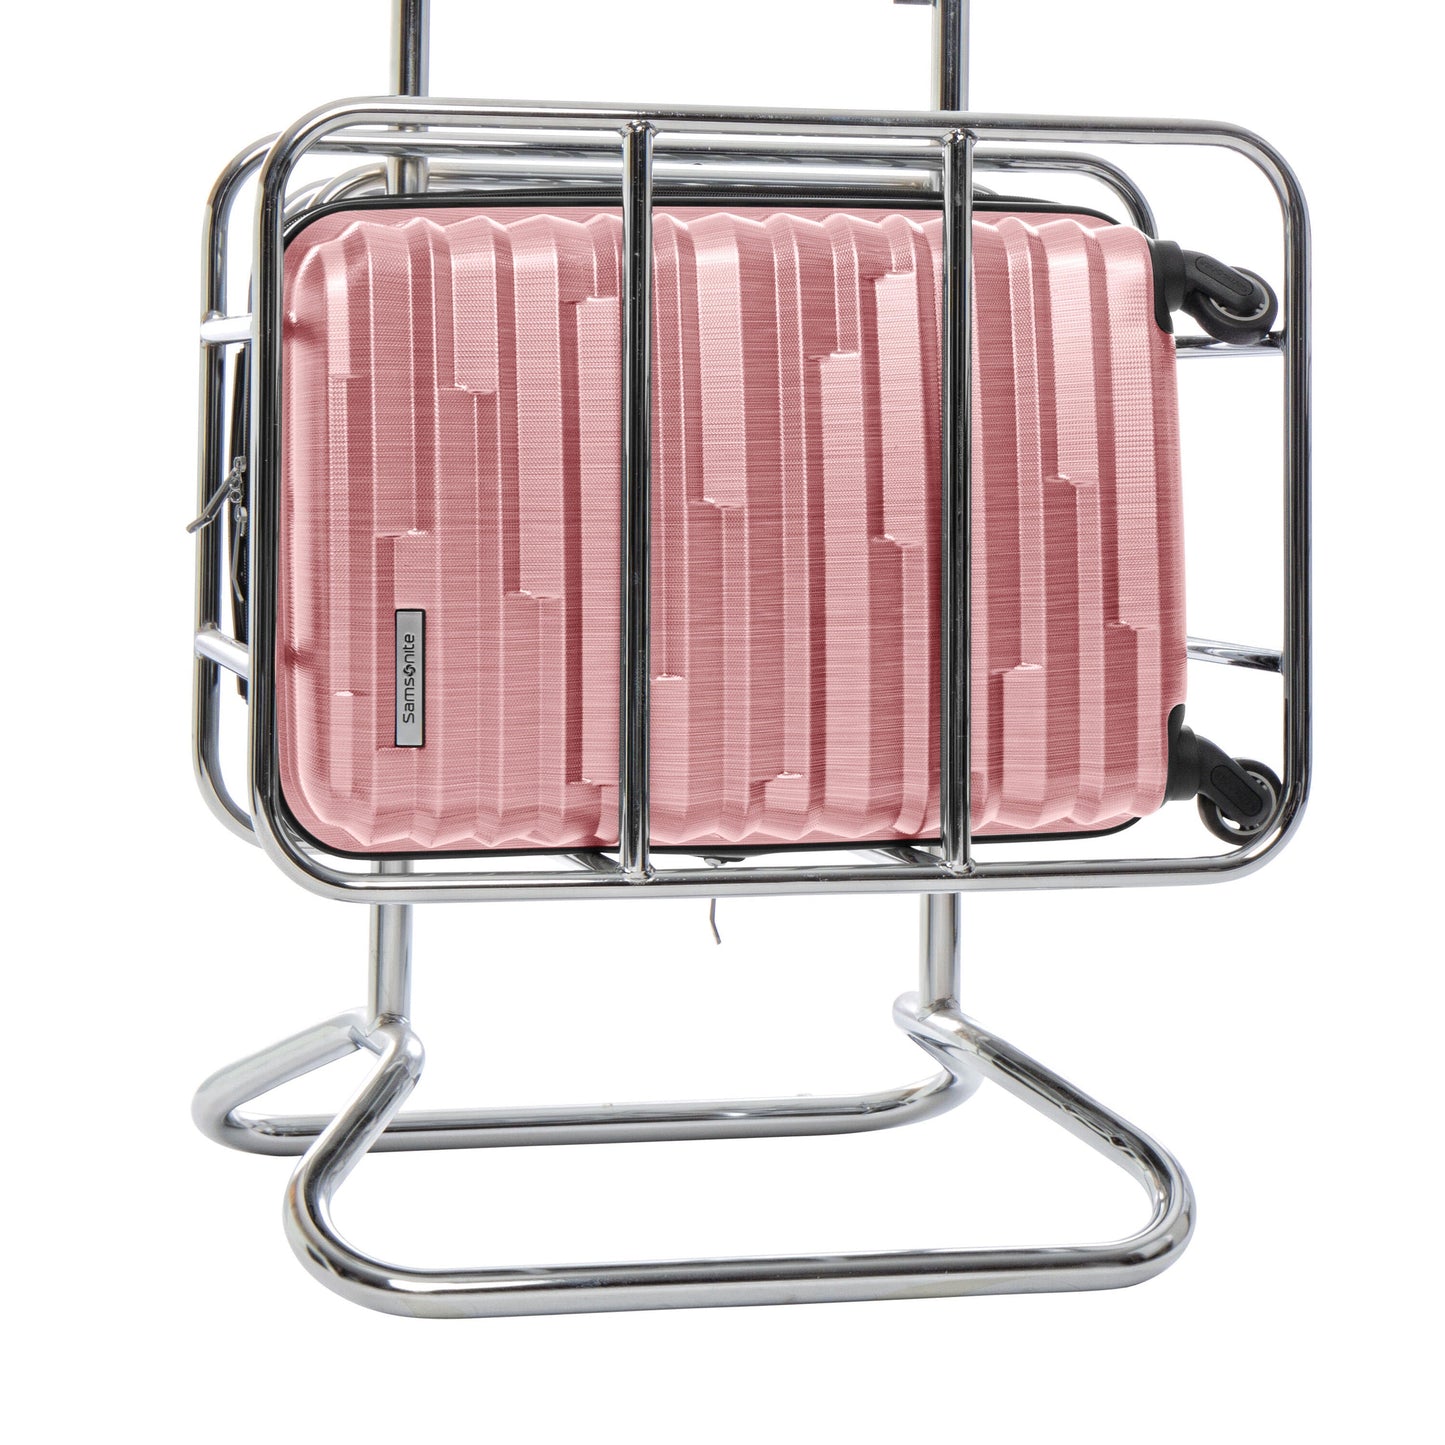 Samsonite Ziplite 4.0 Spinner Hardside Carry-On Luggage - Rose Gold